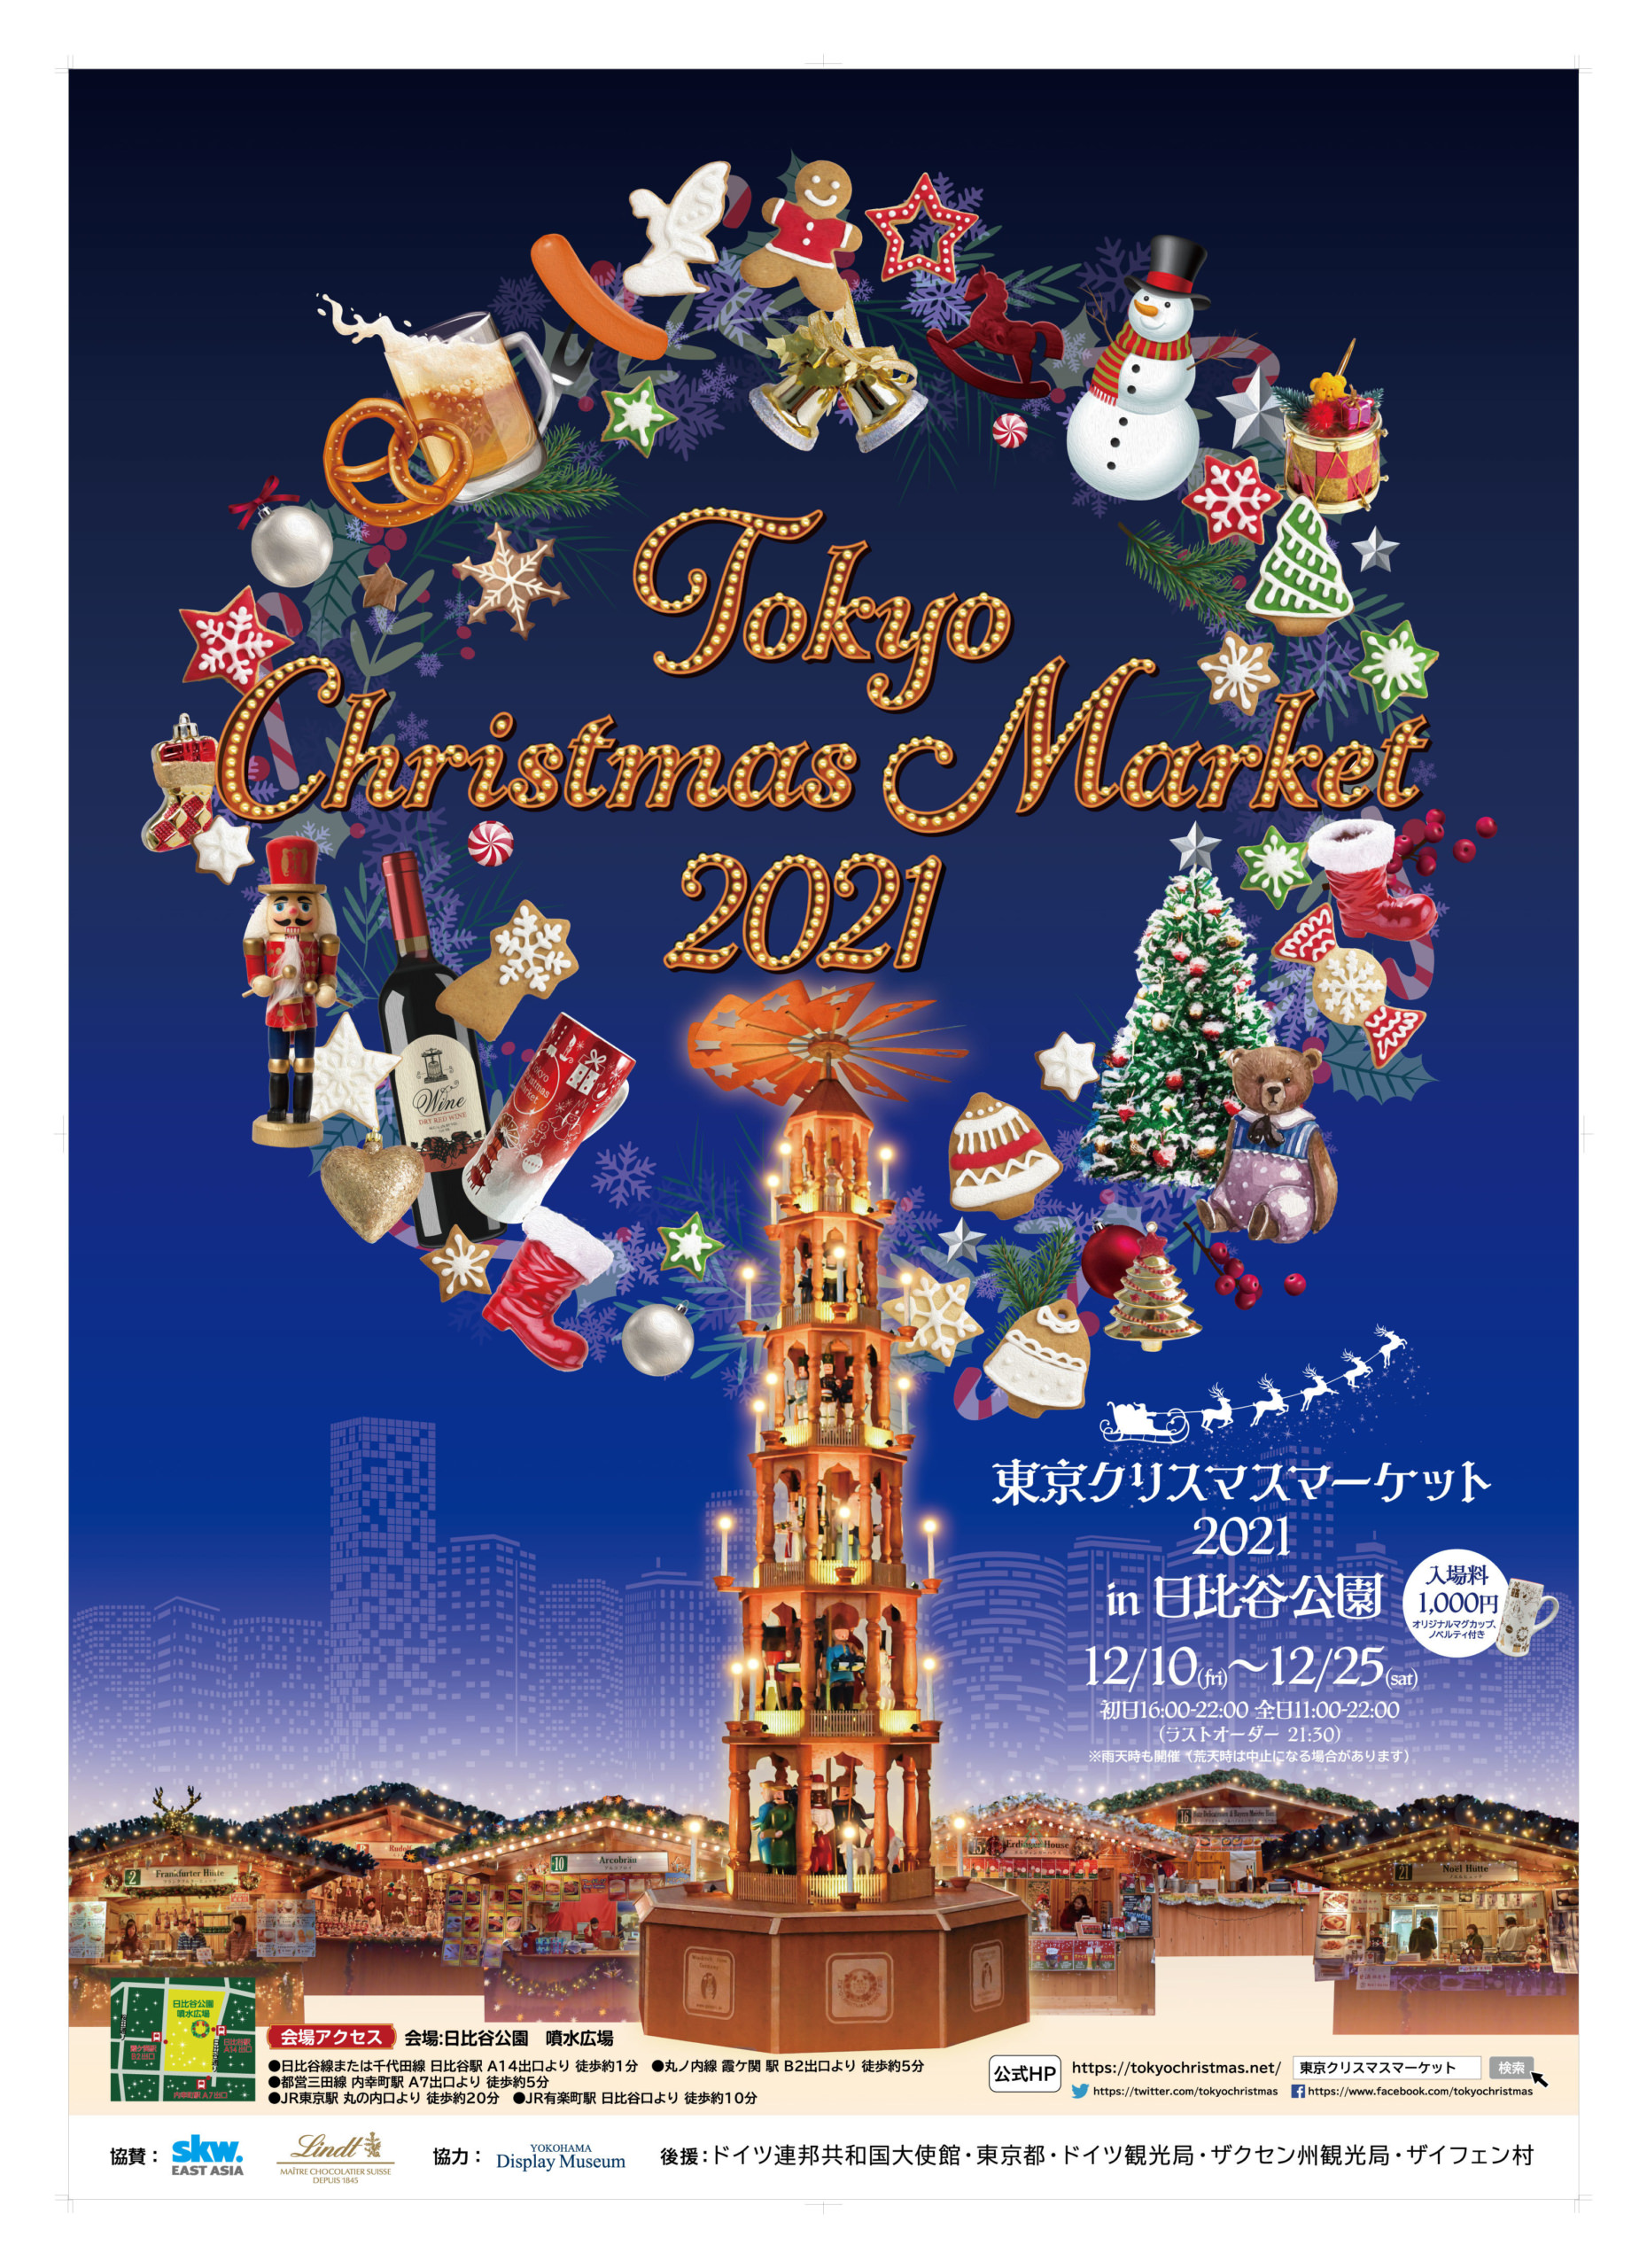 中世から続くヨーロッパの伝統的なお祭りが
今年も日比谷公園で開催決定！！
『東京クリスマスマーケット2021 in日比谷公園』
12月10日(金)～25日(土)